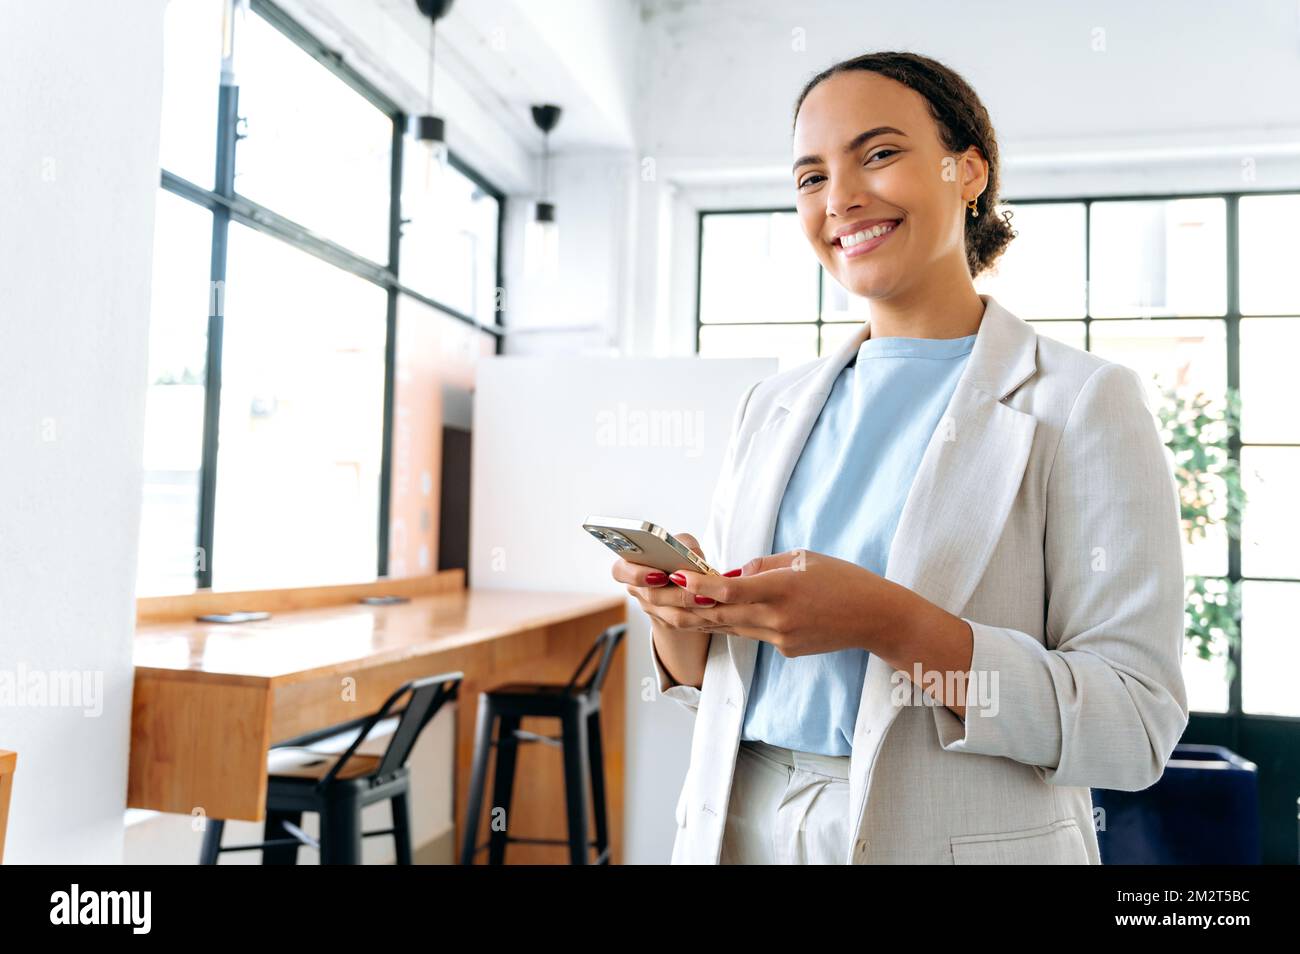 Foto einer positiven hispanischen oder brasilianischen Frau, Unternehmerin, die in einem modernen Büro steht, ihr Mobiltelefon nutzt, online mit einem Kollegen oder Kunden kommuniziert, in die Kamera schaut und freundlich lächelt Stockfoto